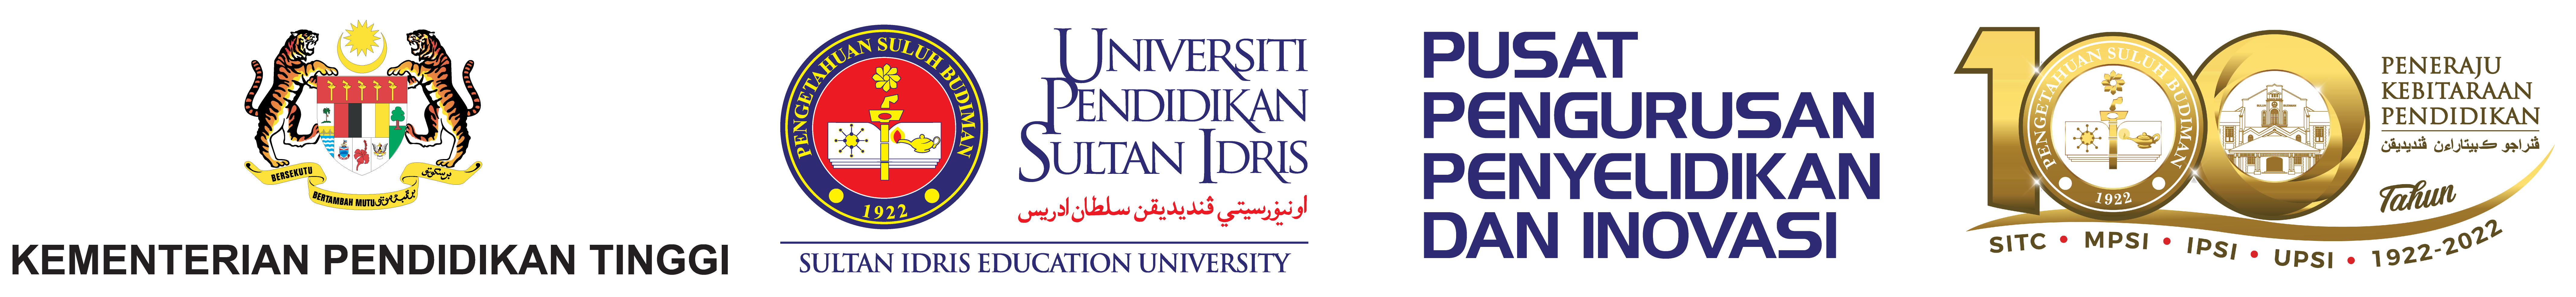 UPSI | Pusat Pengurusan Penyelidikan dan Inovasi